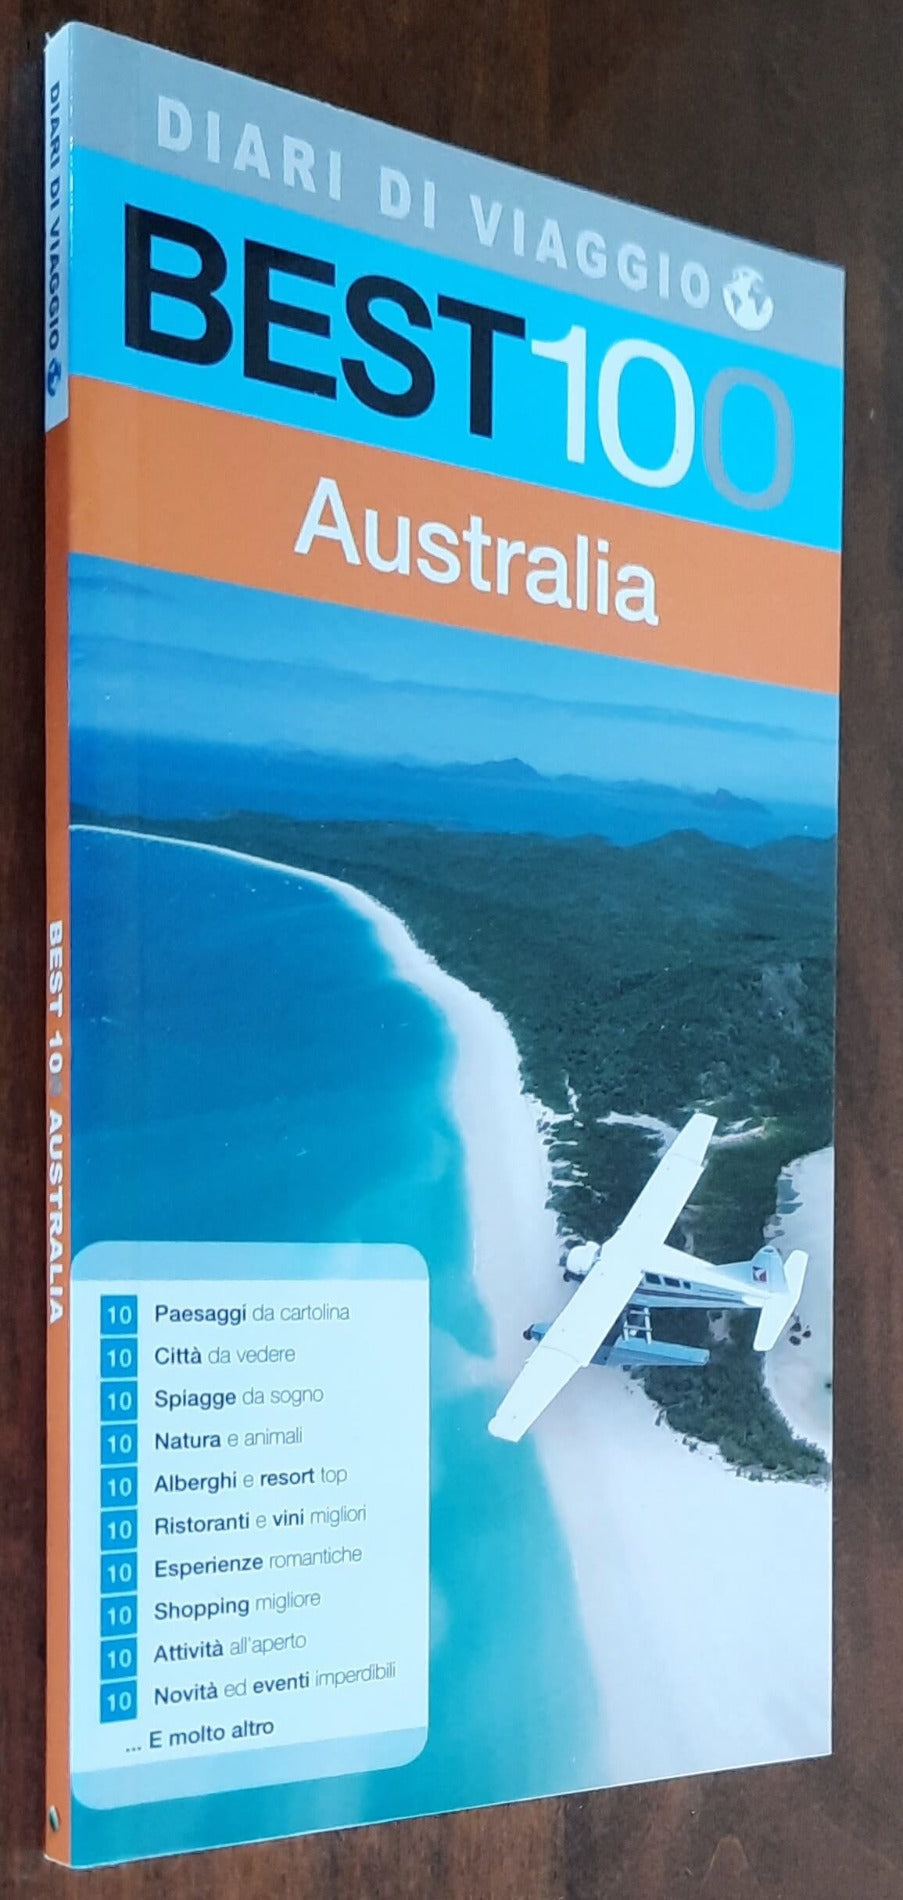 Best 100 - Australia - Diari di viaggio